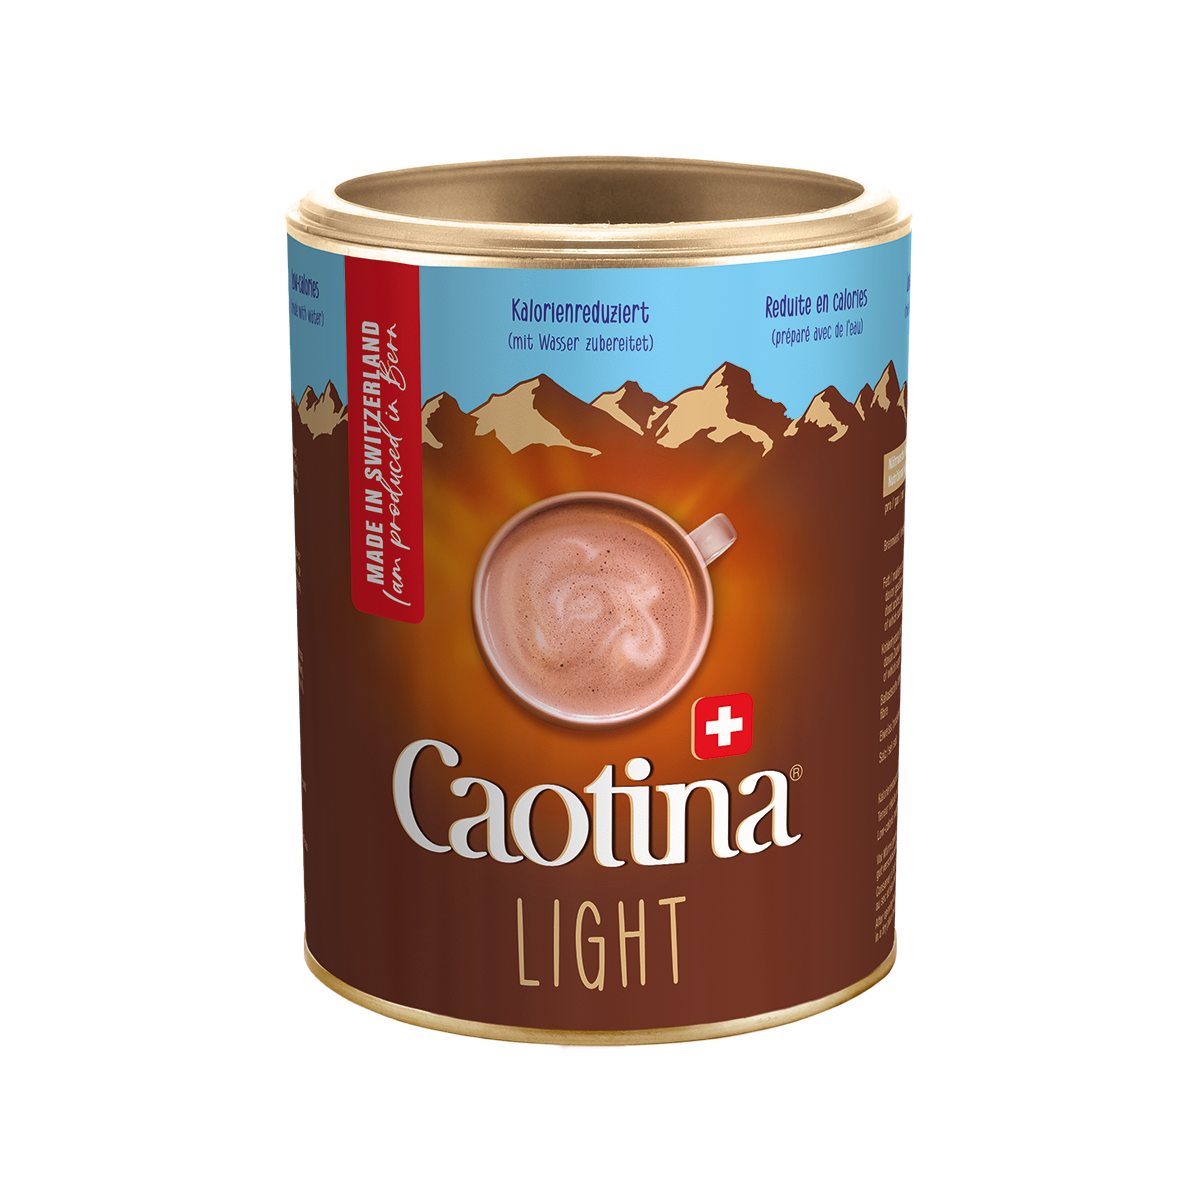 Caotina Light